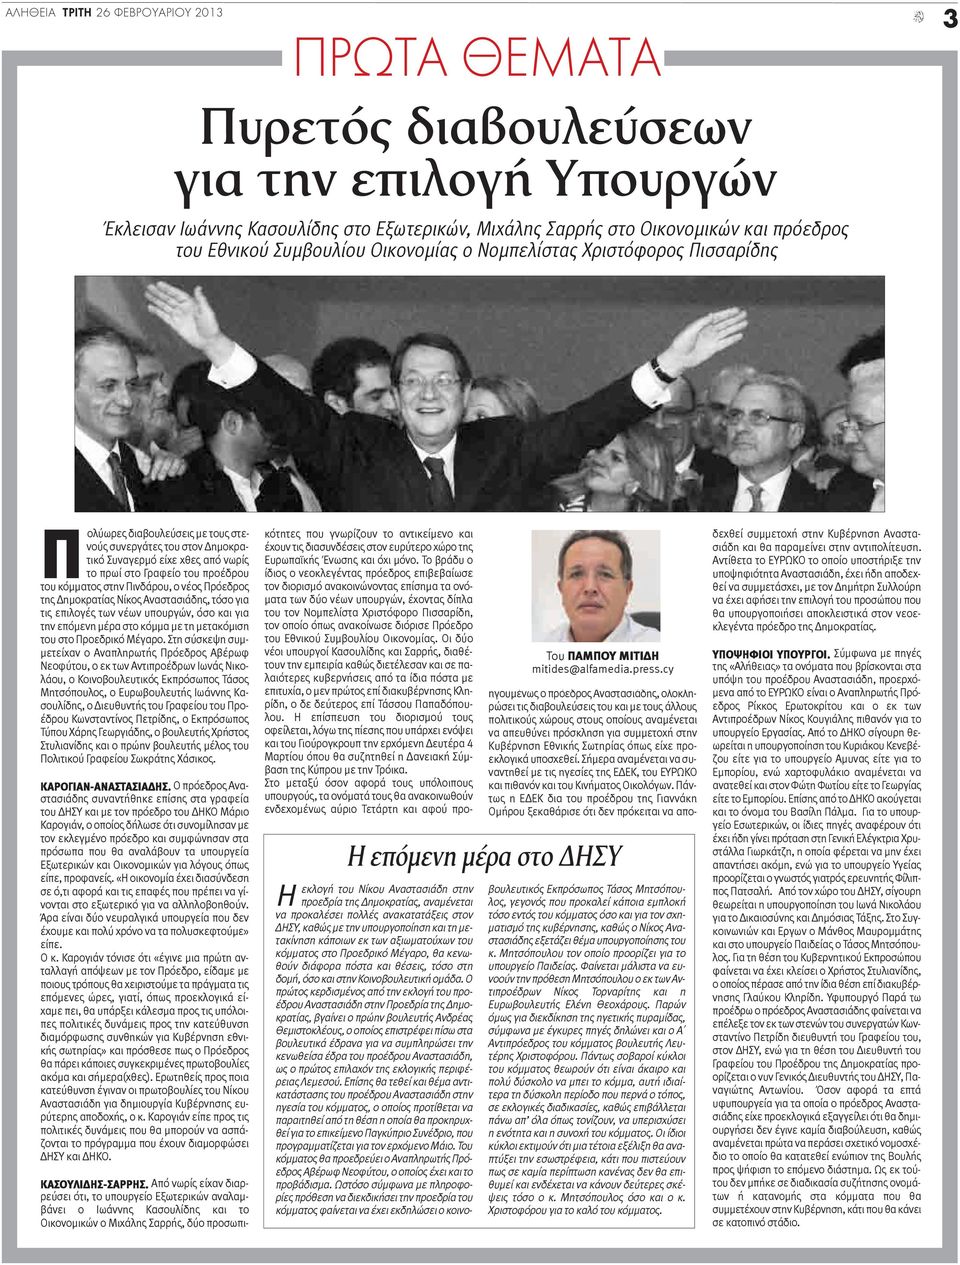 κόμματος στην Πινδάρου, ο νέος Πρόεδρος της Δημοκρατίας Νίκος Αναστασιάδης, τόσο για τις επιλογές των νέων υπουργών, όσο και για την επόμενη μέρα στο κόμμα με τη μετακόμιση του στο Προεδρικό Μέγαρο.